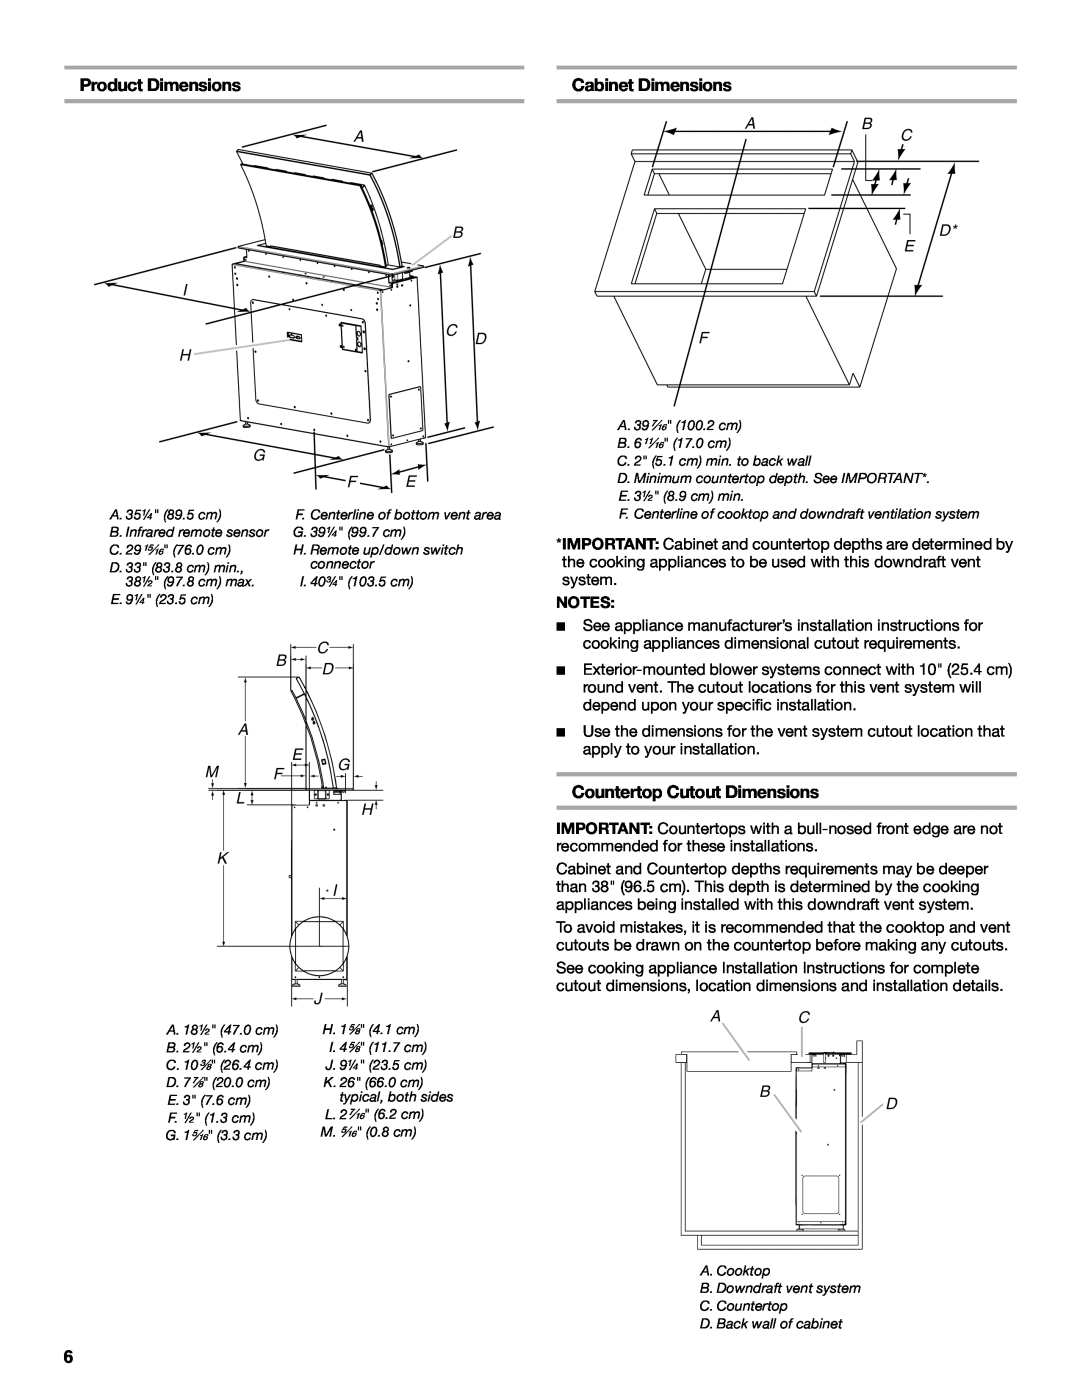 Jenn-Air W10526413C, LIB0057678 Product Dimensions, Cabinet Dimensions, Countertop Cutout Dimensions, Ab F, C D E 